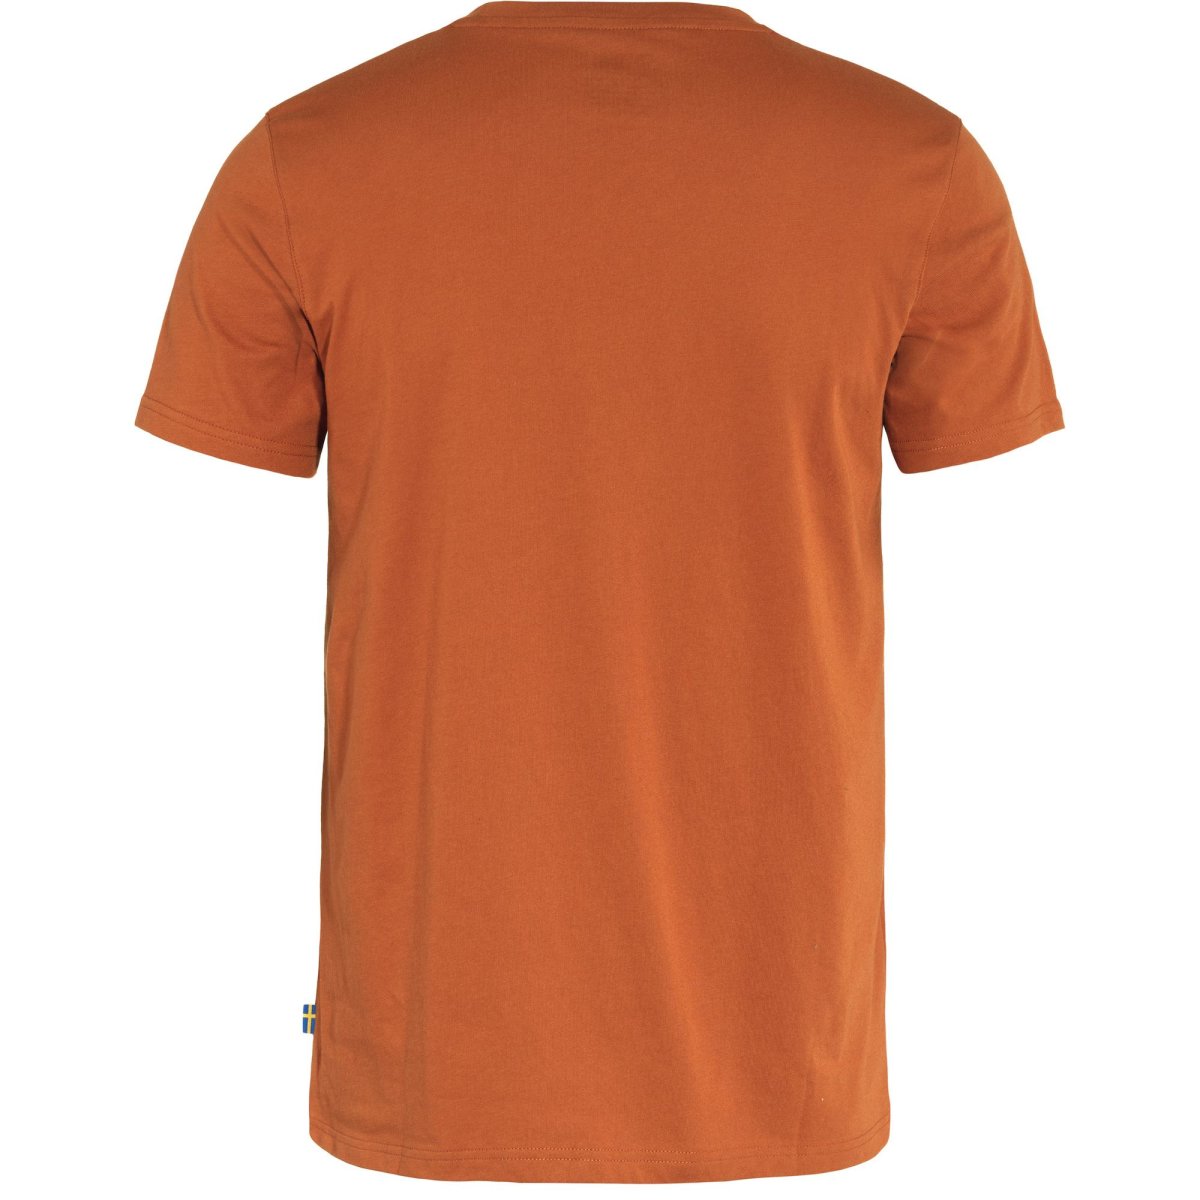 Fj&auml;llr&auml;ven Logo T-Shirt 87310 teracotta brown Herren Jersey Brand Shirt